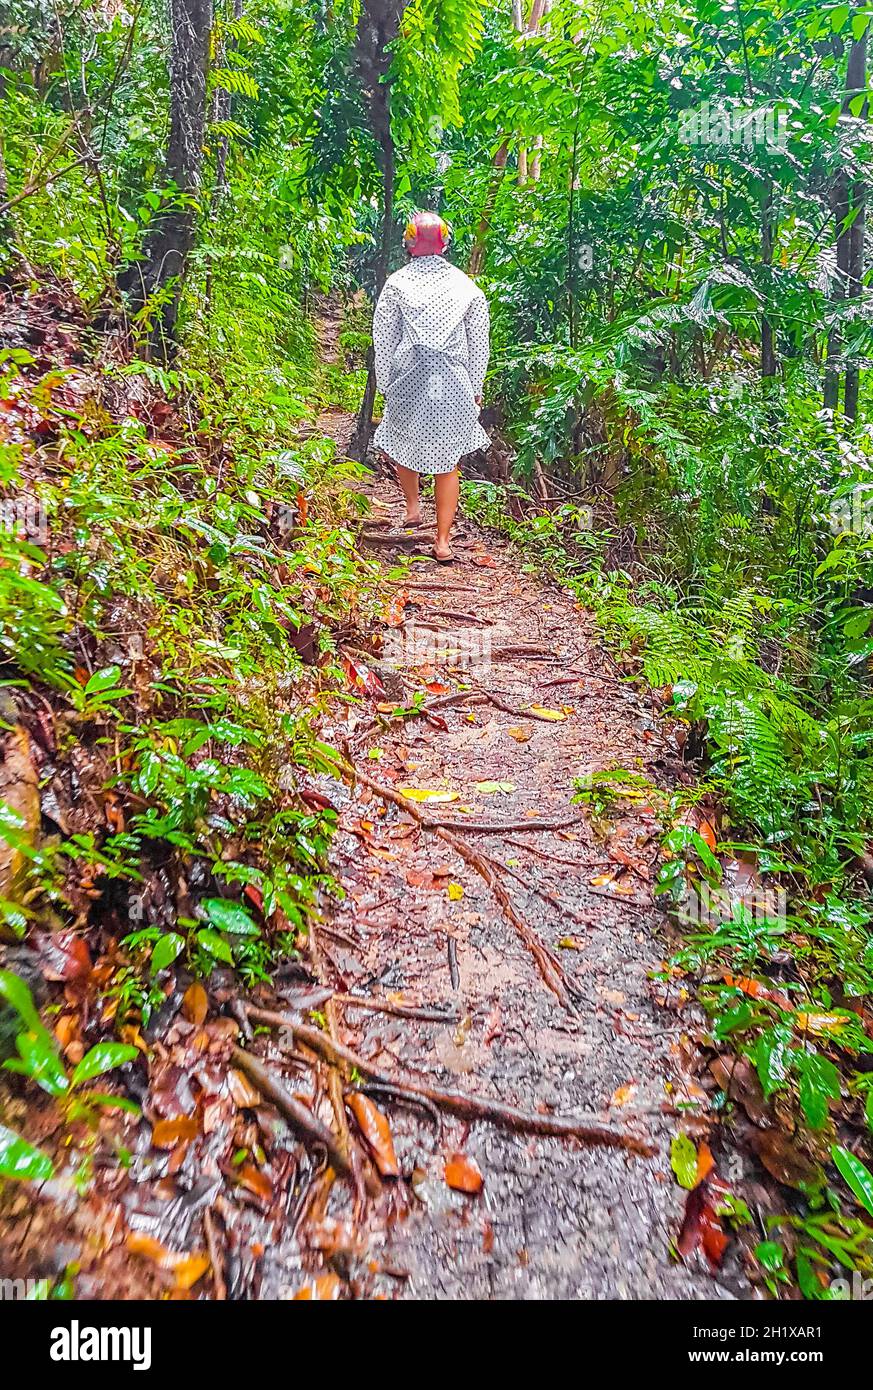 Tourist in regen Poncho und Helm Wanderungen in tropischen Dschungel Wald Wanderweg und Pfad auf Koh Samui in Surat Thani Thailand. Stockfoto